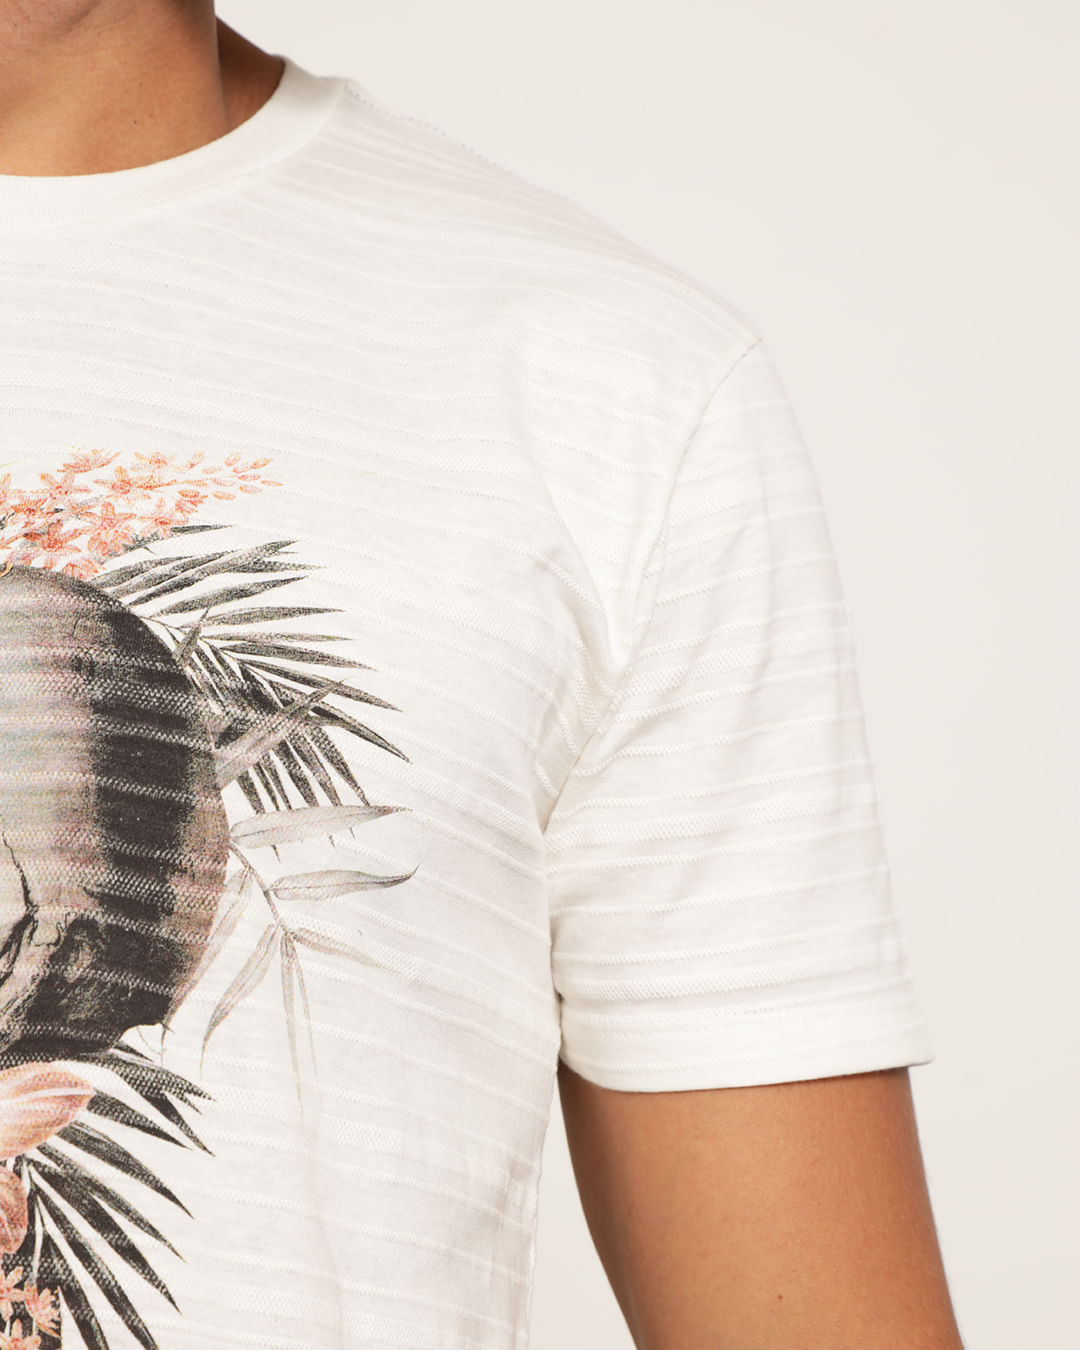 Camiseta-Est-Caveira-Floral-2056-Pgg---Off-White